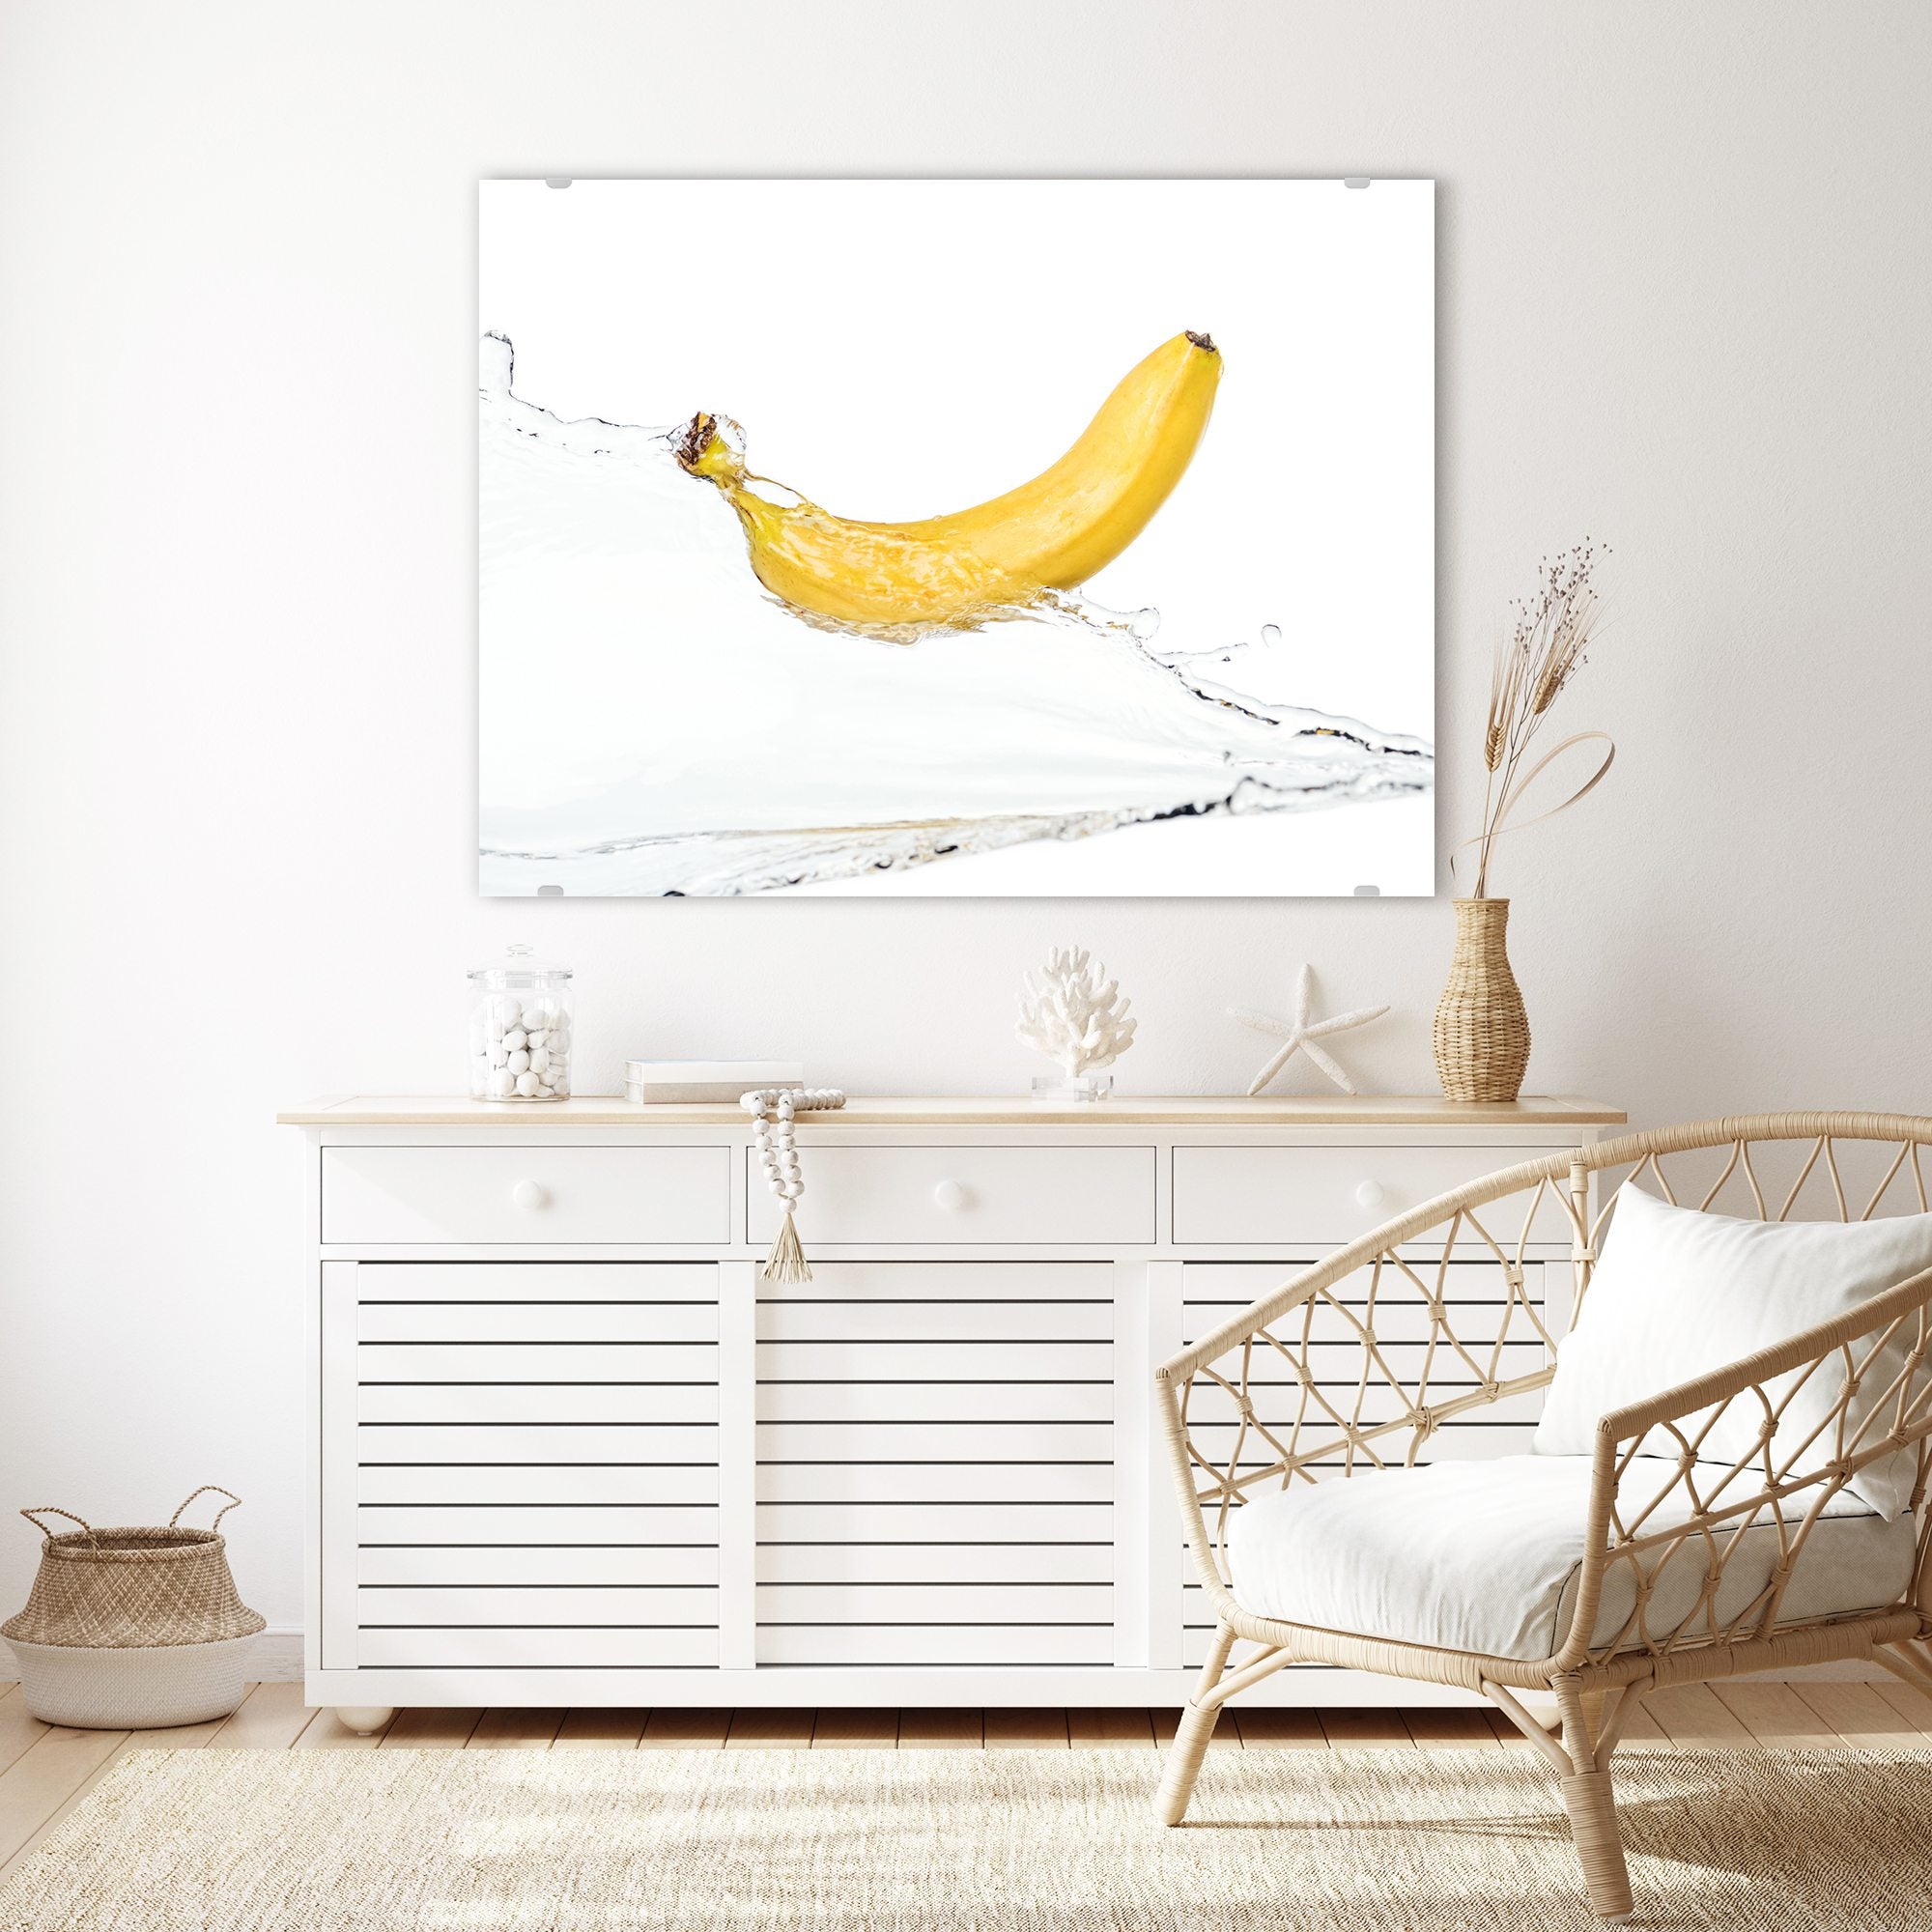 Wandbild - Banane auf Wassersplash